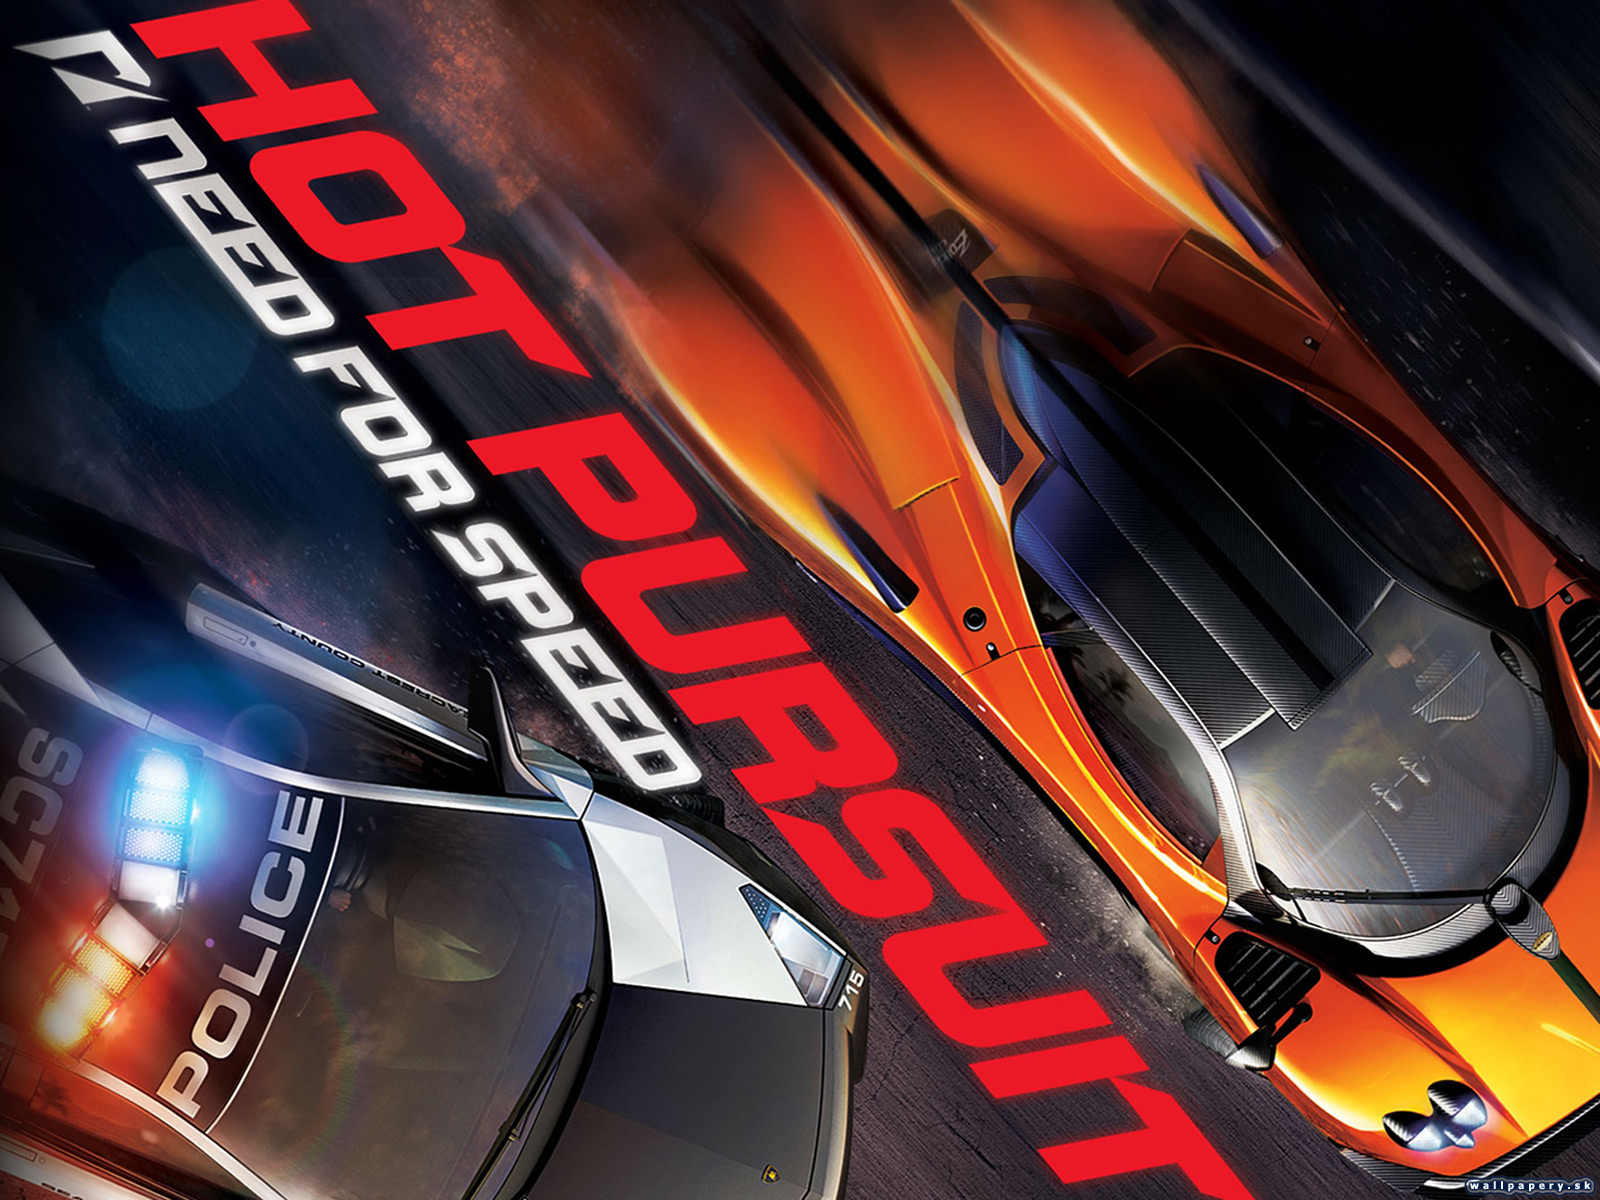 Нид фор спид хот персьют. Need for Speed: hot Pursuit (2010) обложка. NFS hot Pursuit 2010 обложка. Need for Speed hot Pursuit 2010 Remastered. Need for Speed пурсуит.